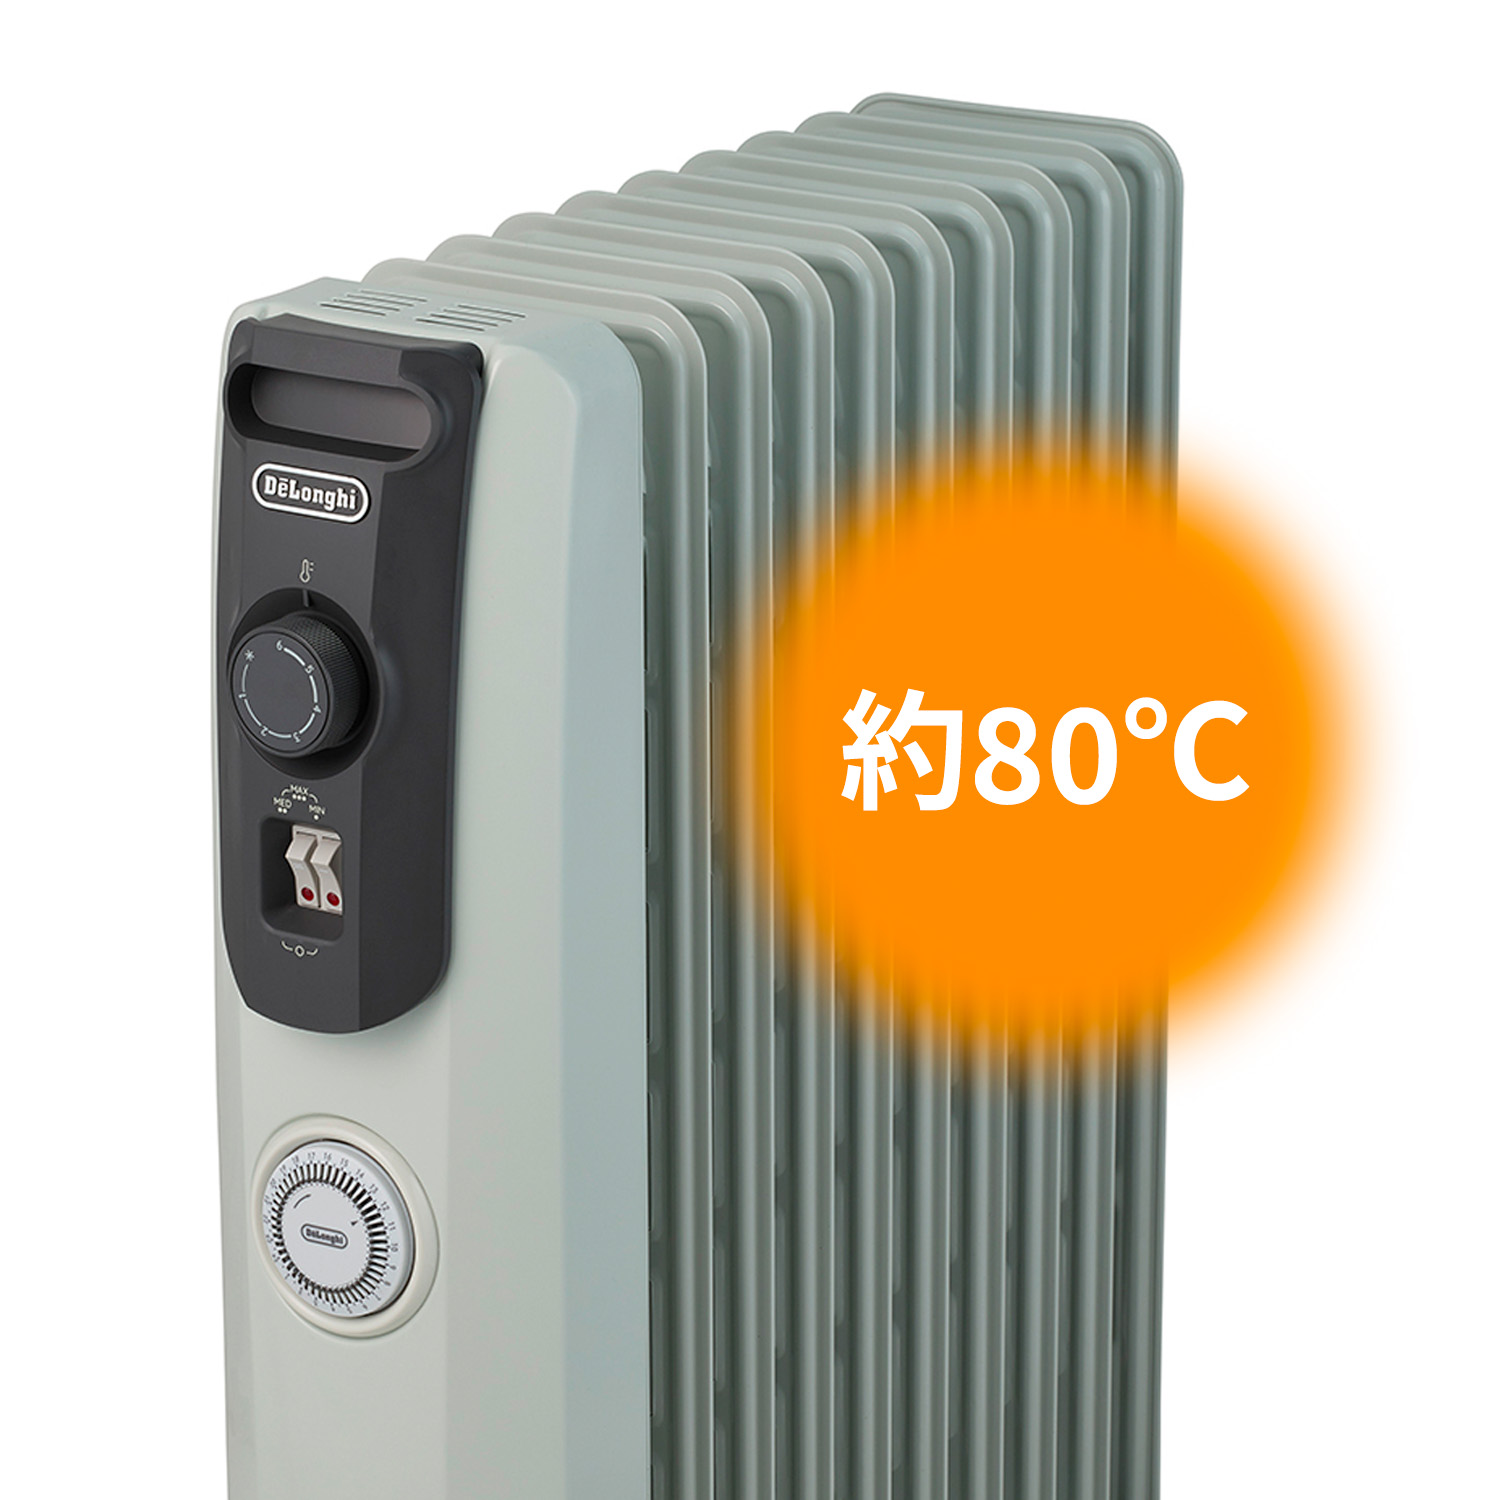 冷暖房/空調 オイルヒーター デロンギ オイルヒーター RHJ10F1015-DG |ゼロ風暖房 デロンギ ヒーター